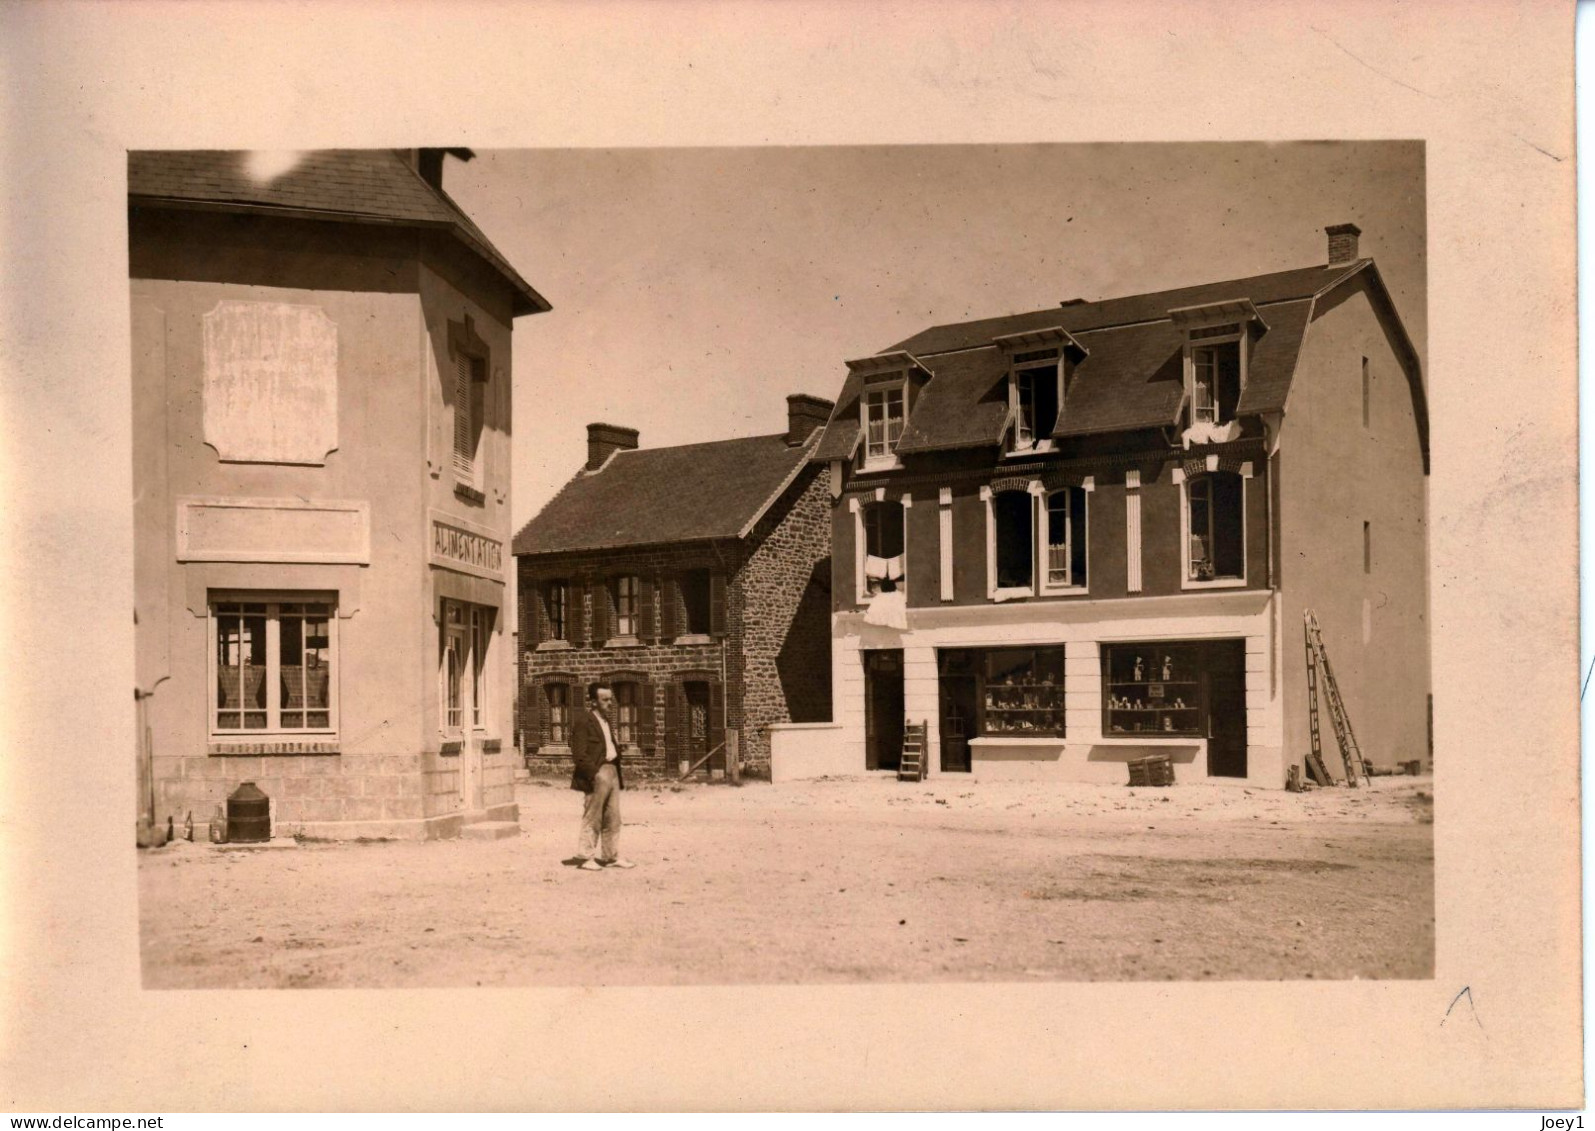 Photo De St Martin De Bréhal, Département De La Manche Années 1920 Format 13/18 - Orte